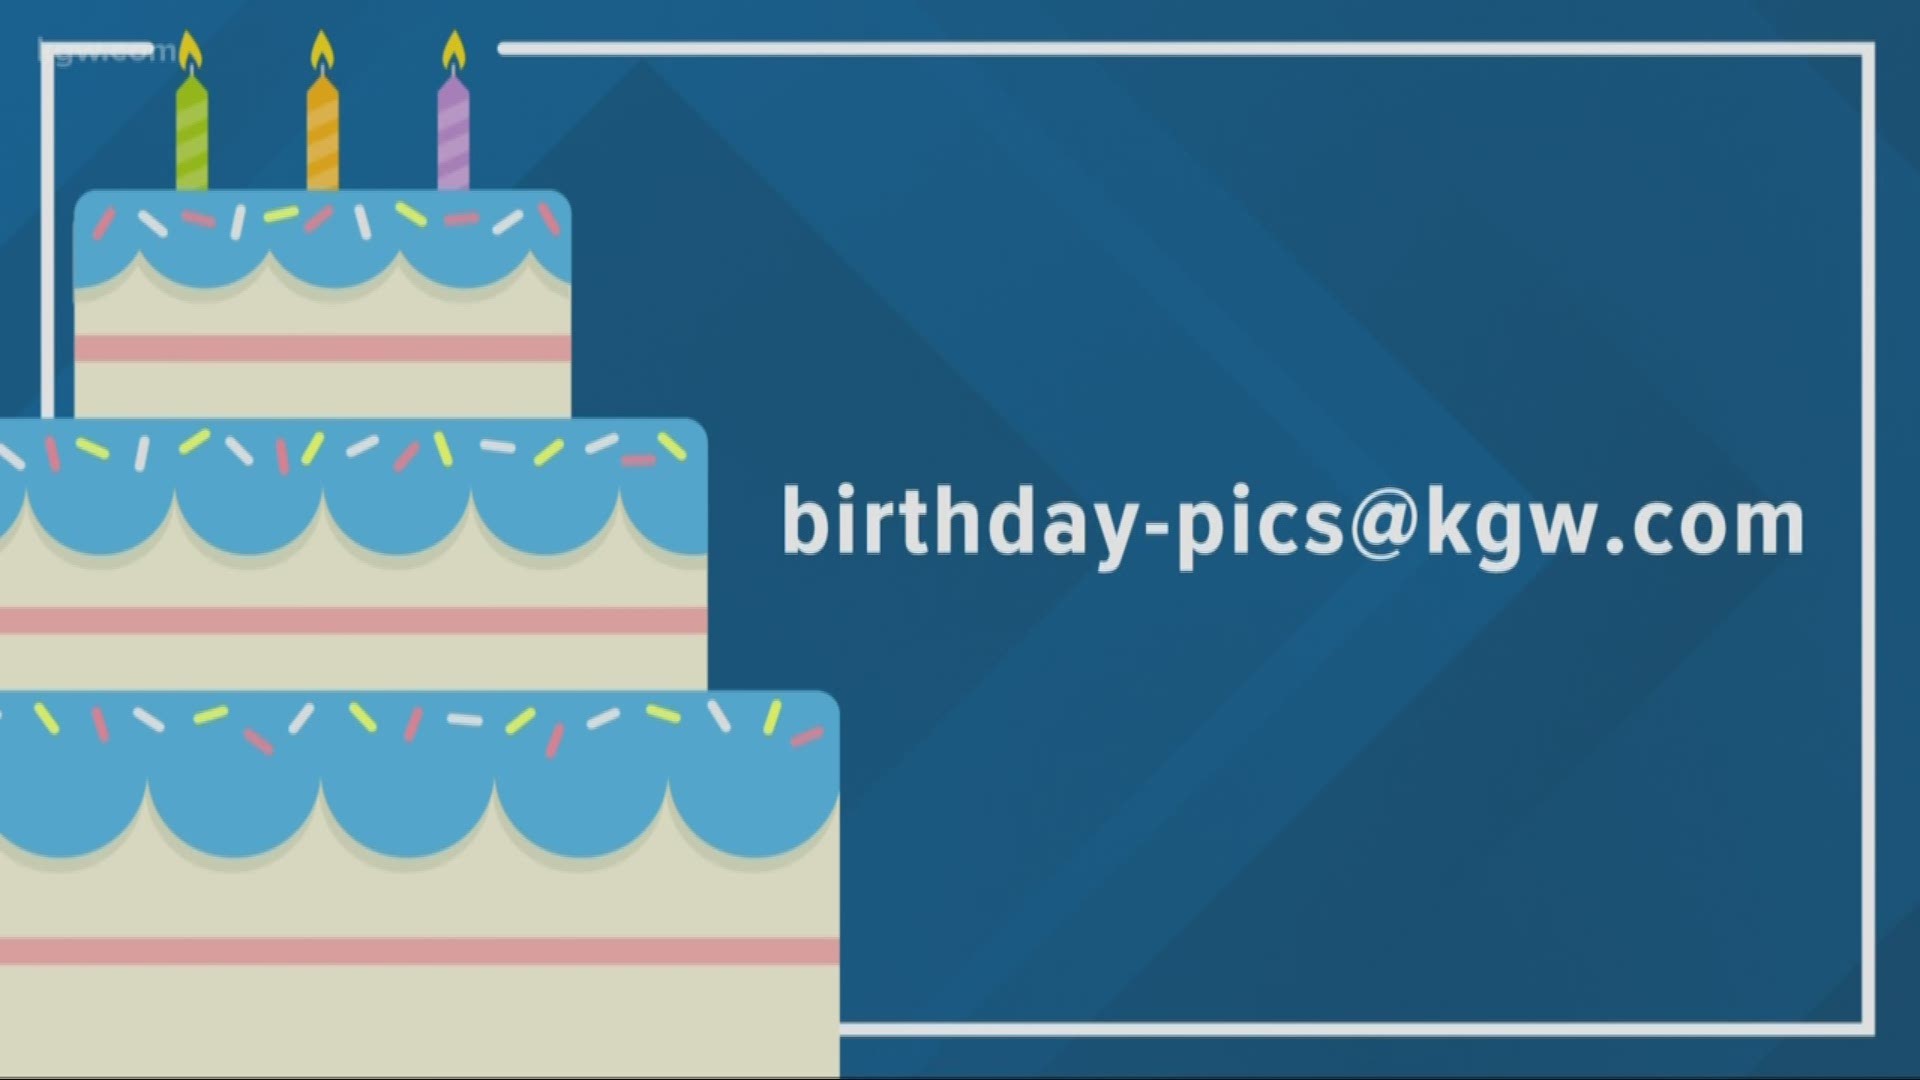 KGW viewer birthdays: 10-10-19